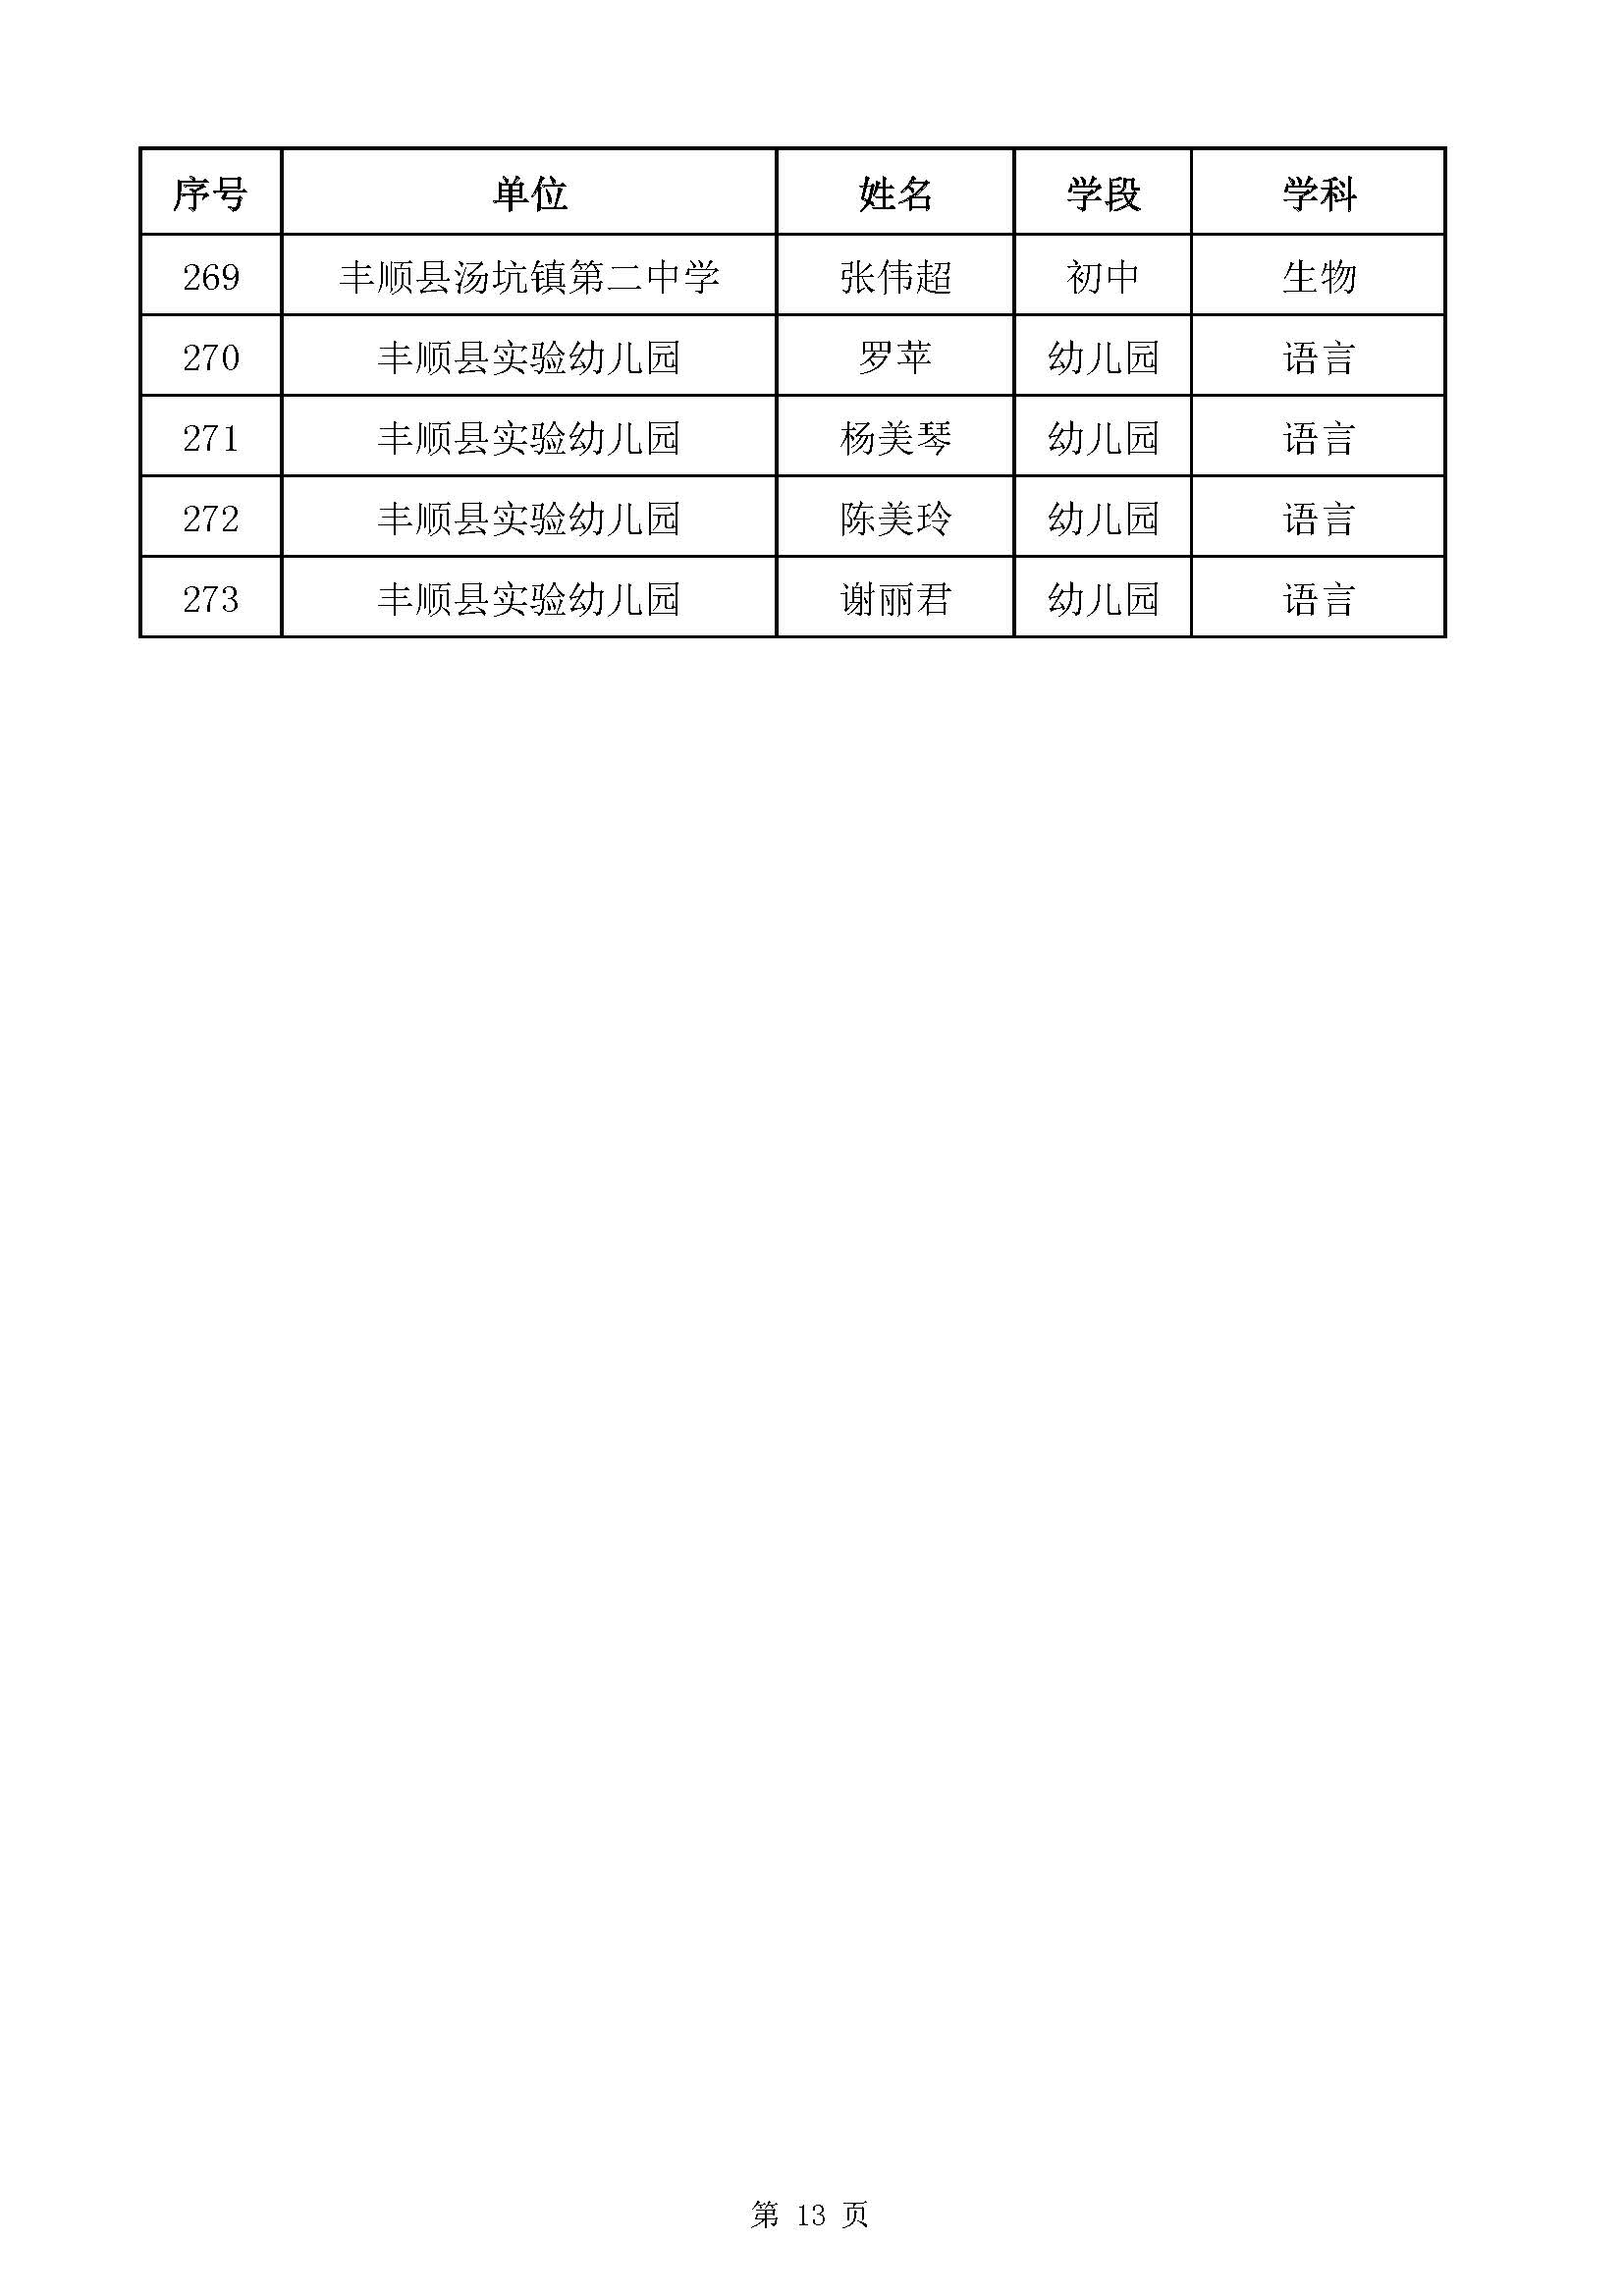 附件1：2020年梅州市中小学高级教师职称评审通过人员名单（丰顺县）_页面_13.jpg